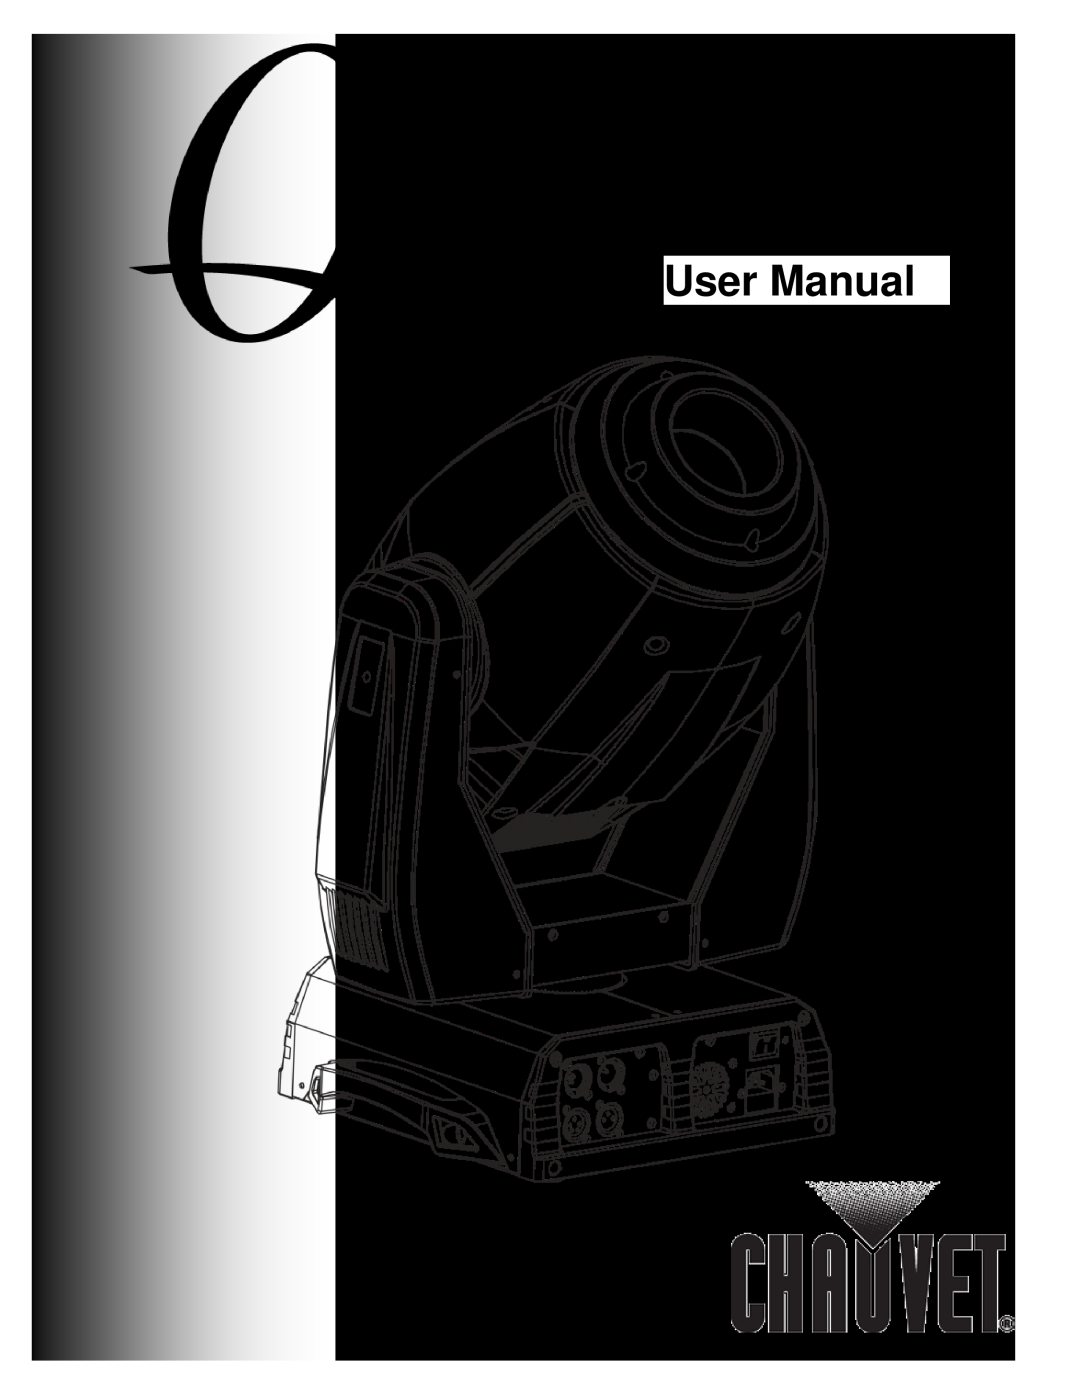 Chauvet 560 user manual User Manual 